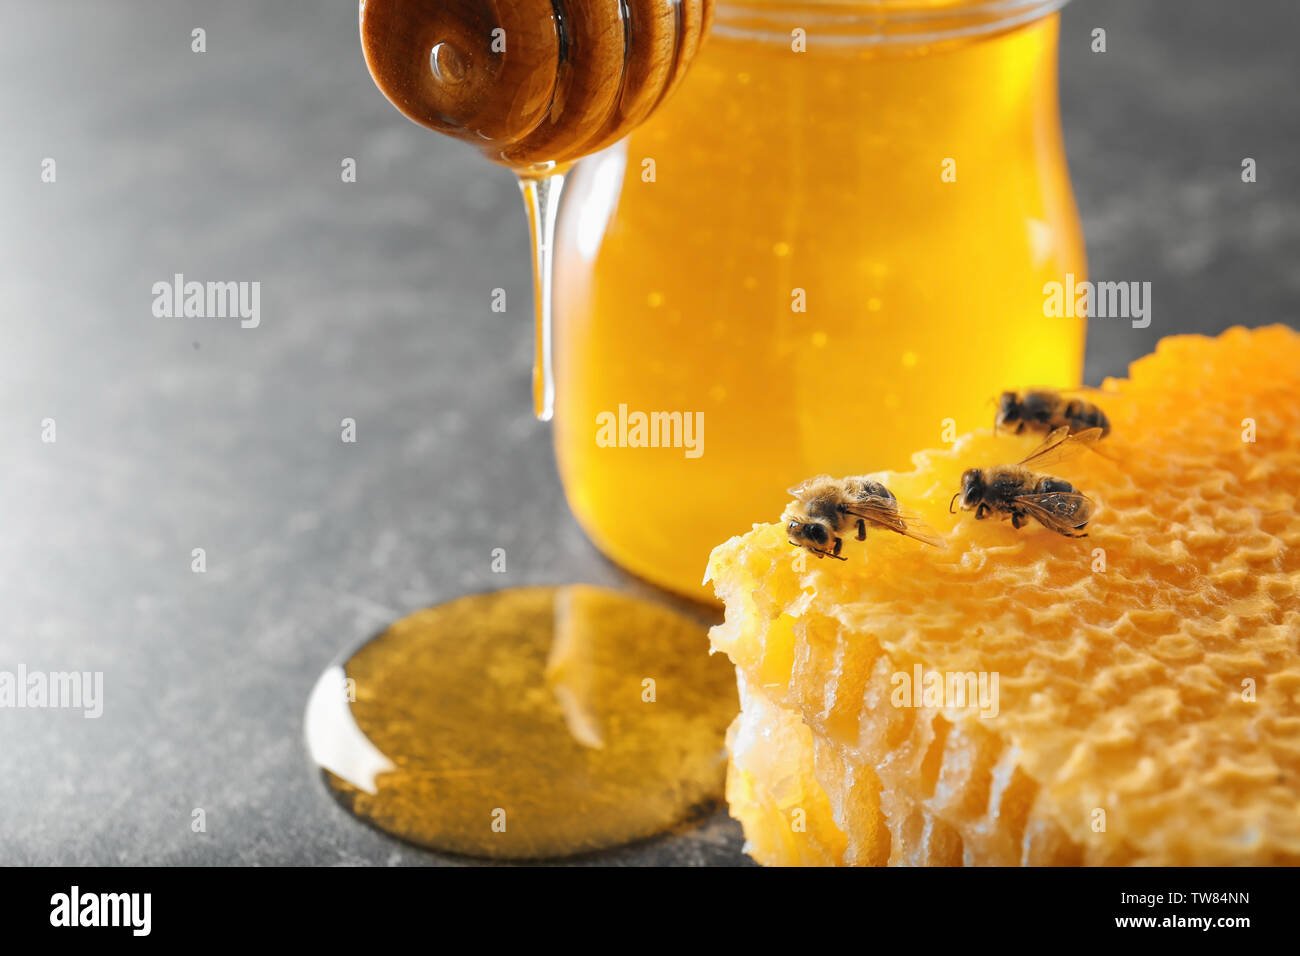 botella de miel real y panal